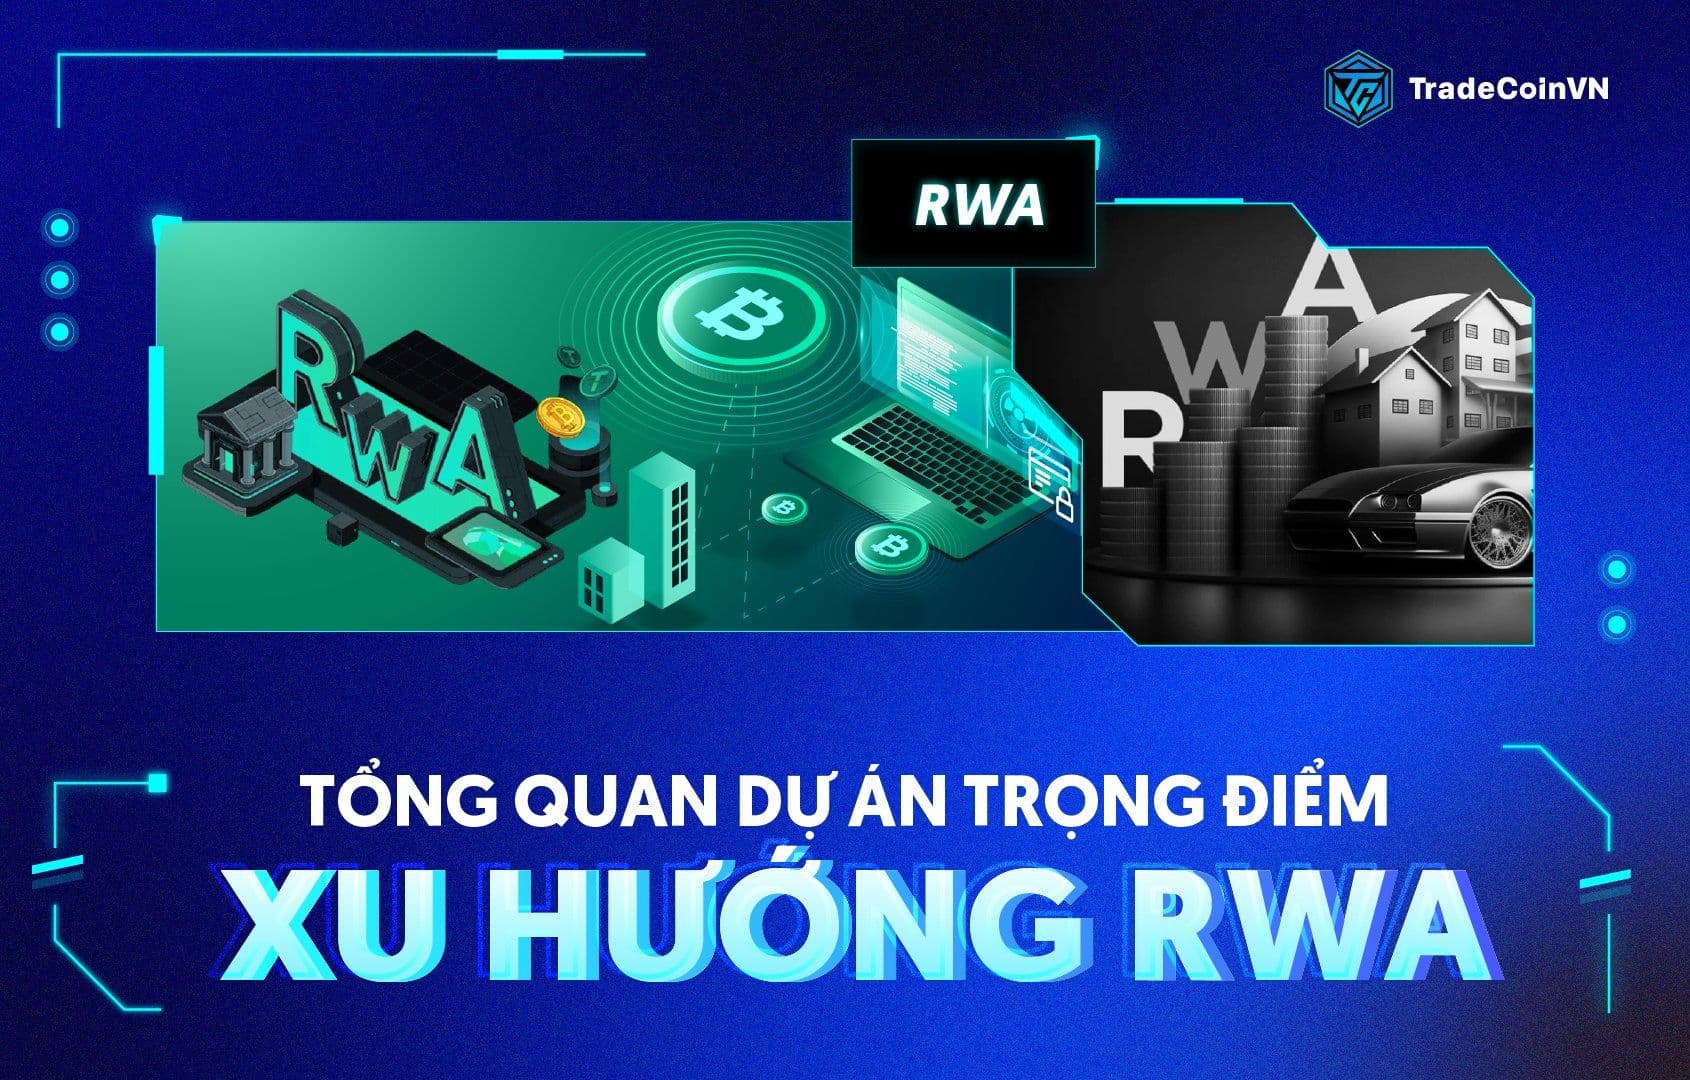 Hiểu rõ về tiềm năng của RWA và các dự án trọng điểm